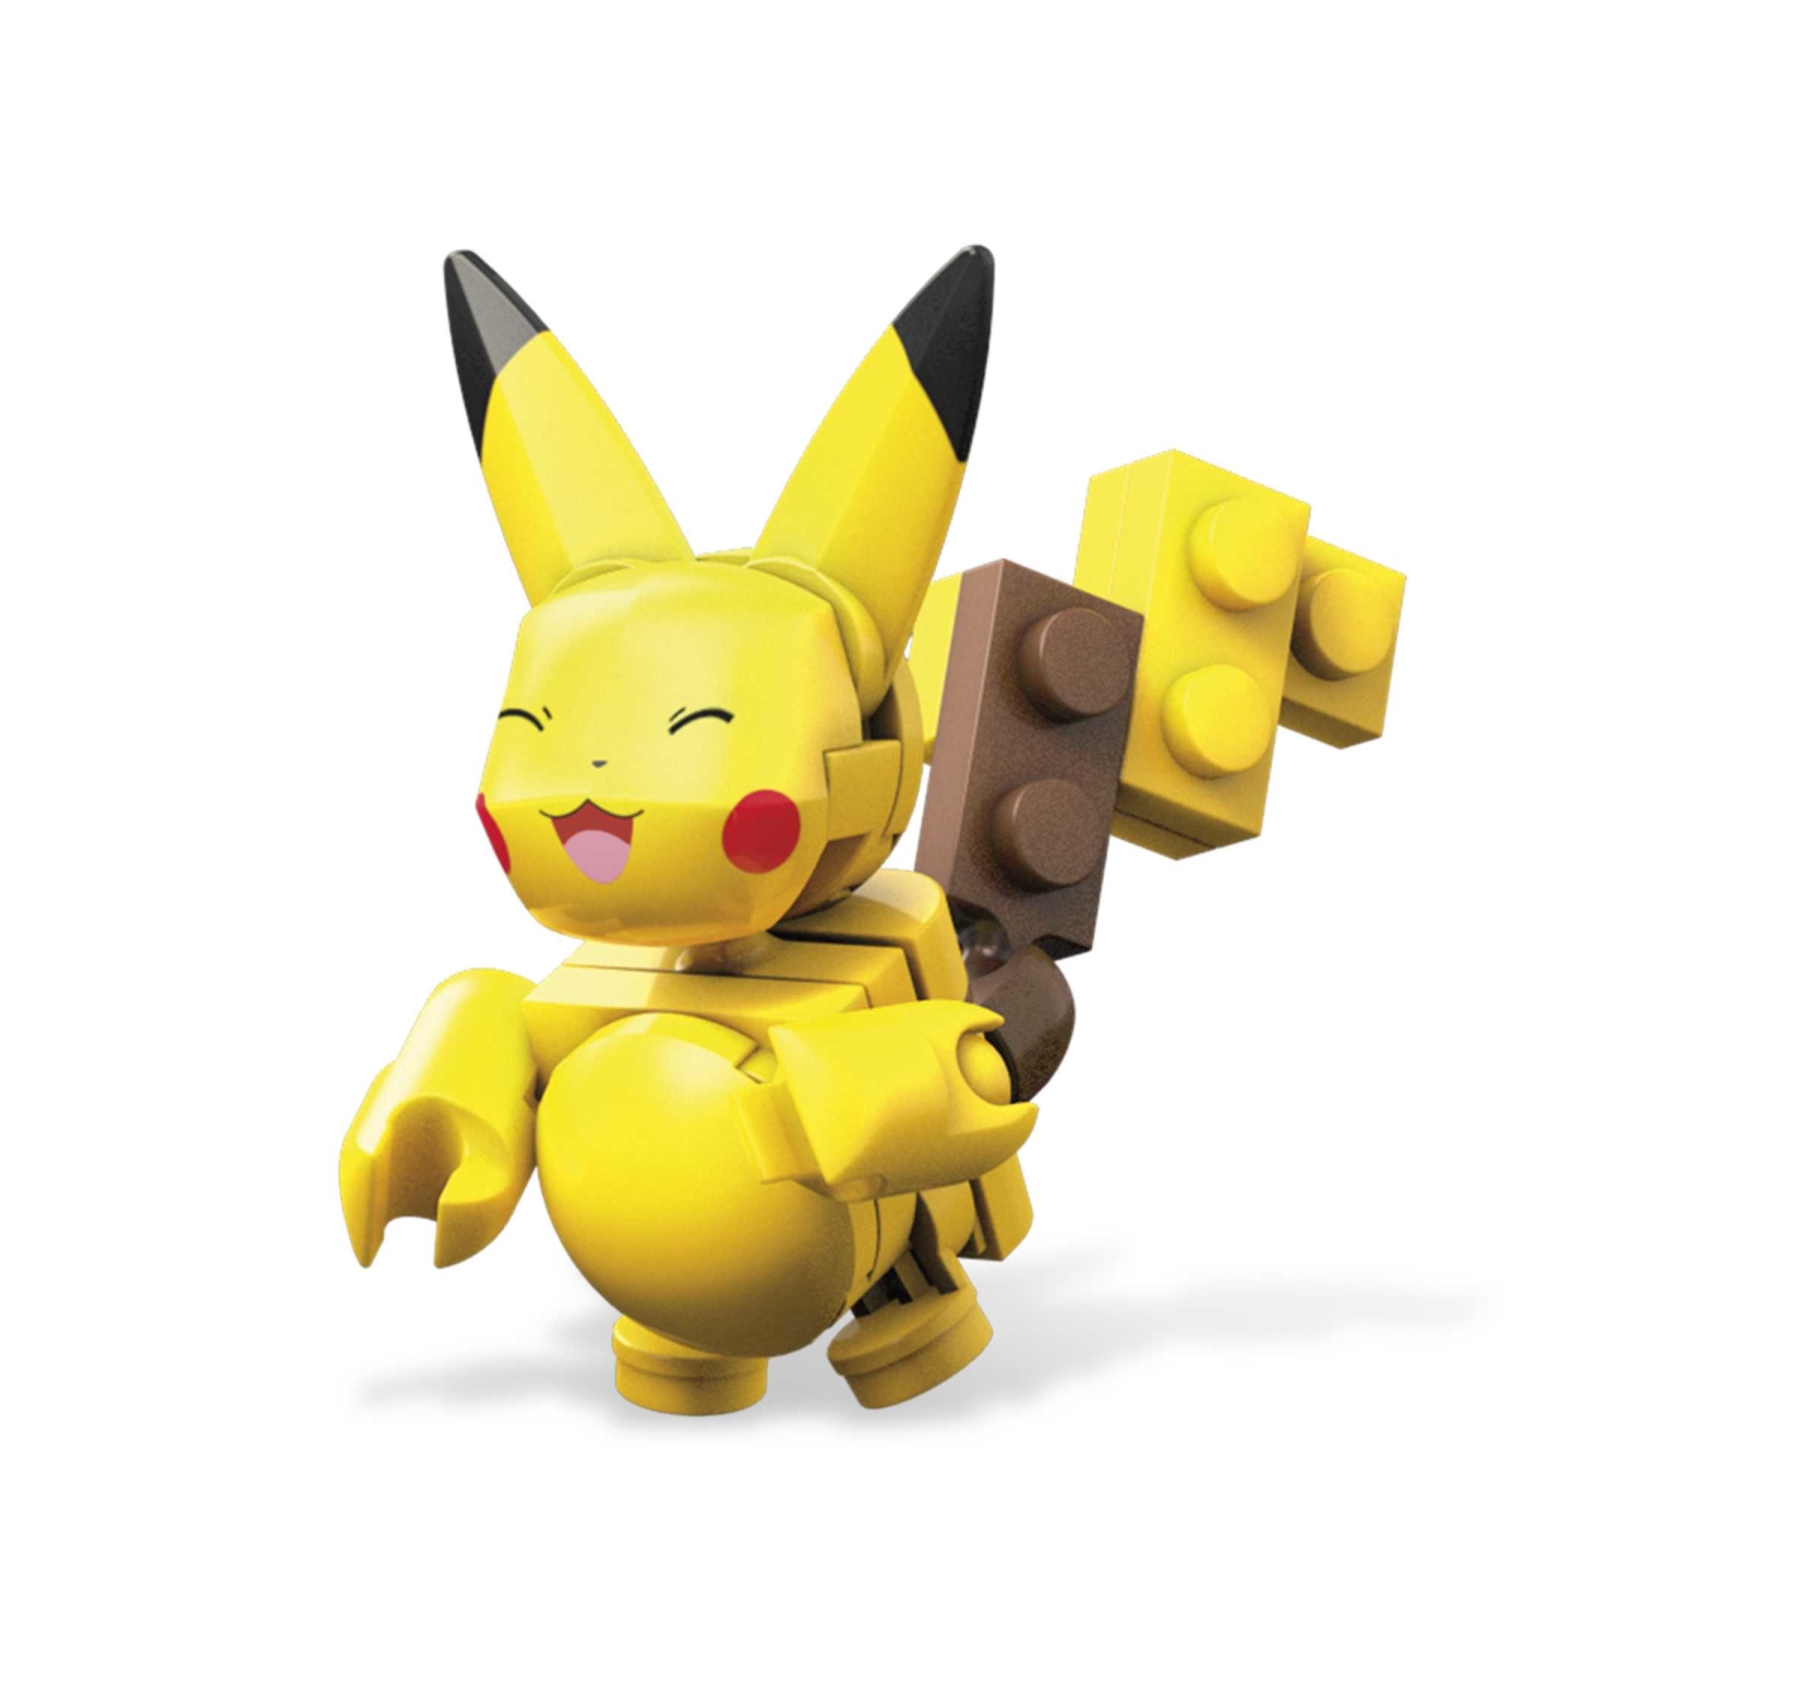 Mega pokémon - pokéball personaggi kanto, set con 4 pokémon da costruire, include pikachu, bulbasaur, charmander e squirtle, pokéball da esporre, 6+ anni, gcn21 - POKEMON